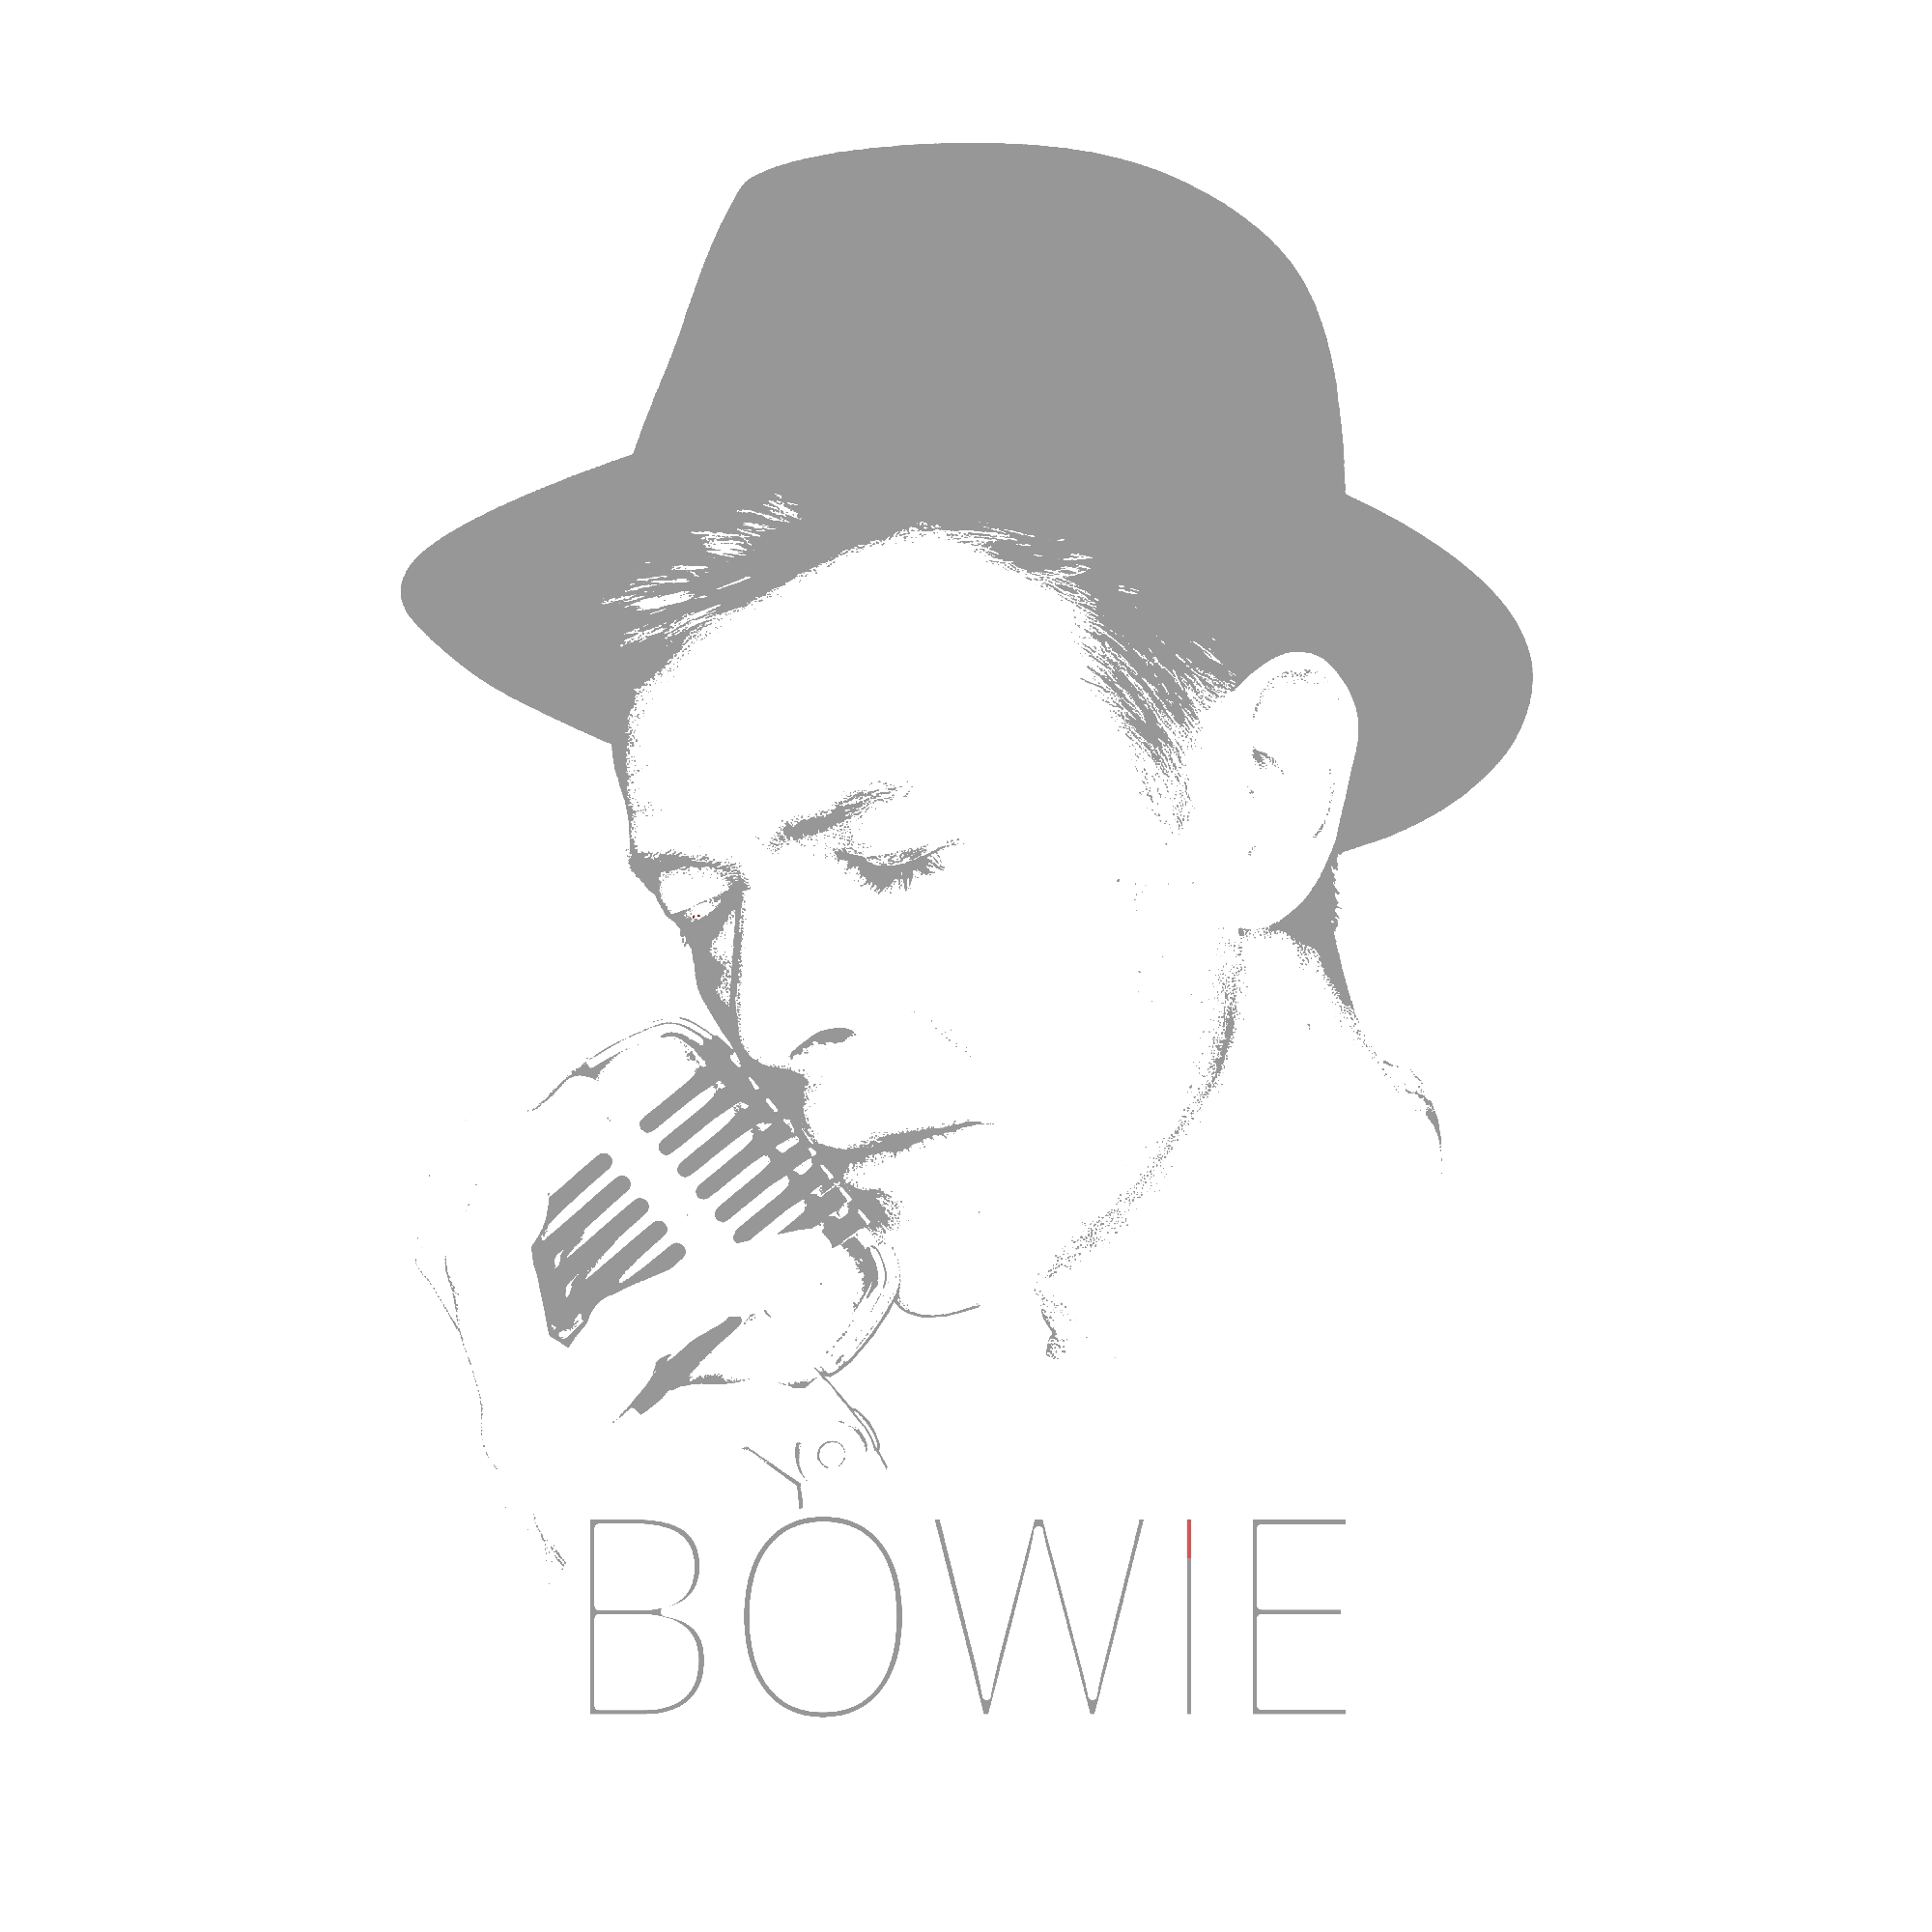 David Bowie Art Creation by Steve Stachini - Sublime Bowie 120cm x 120cm